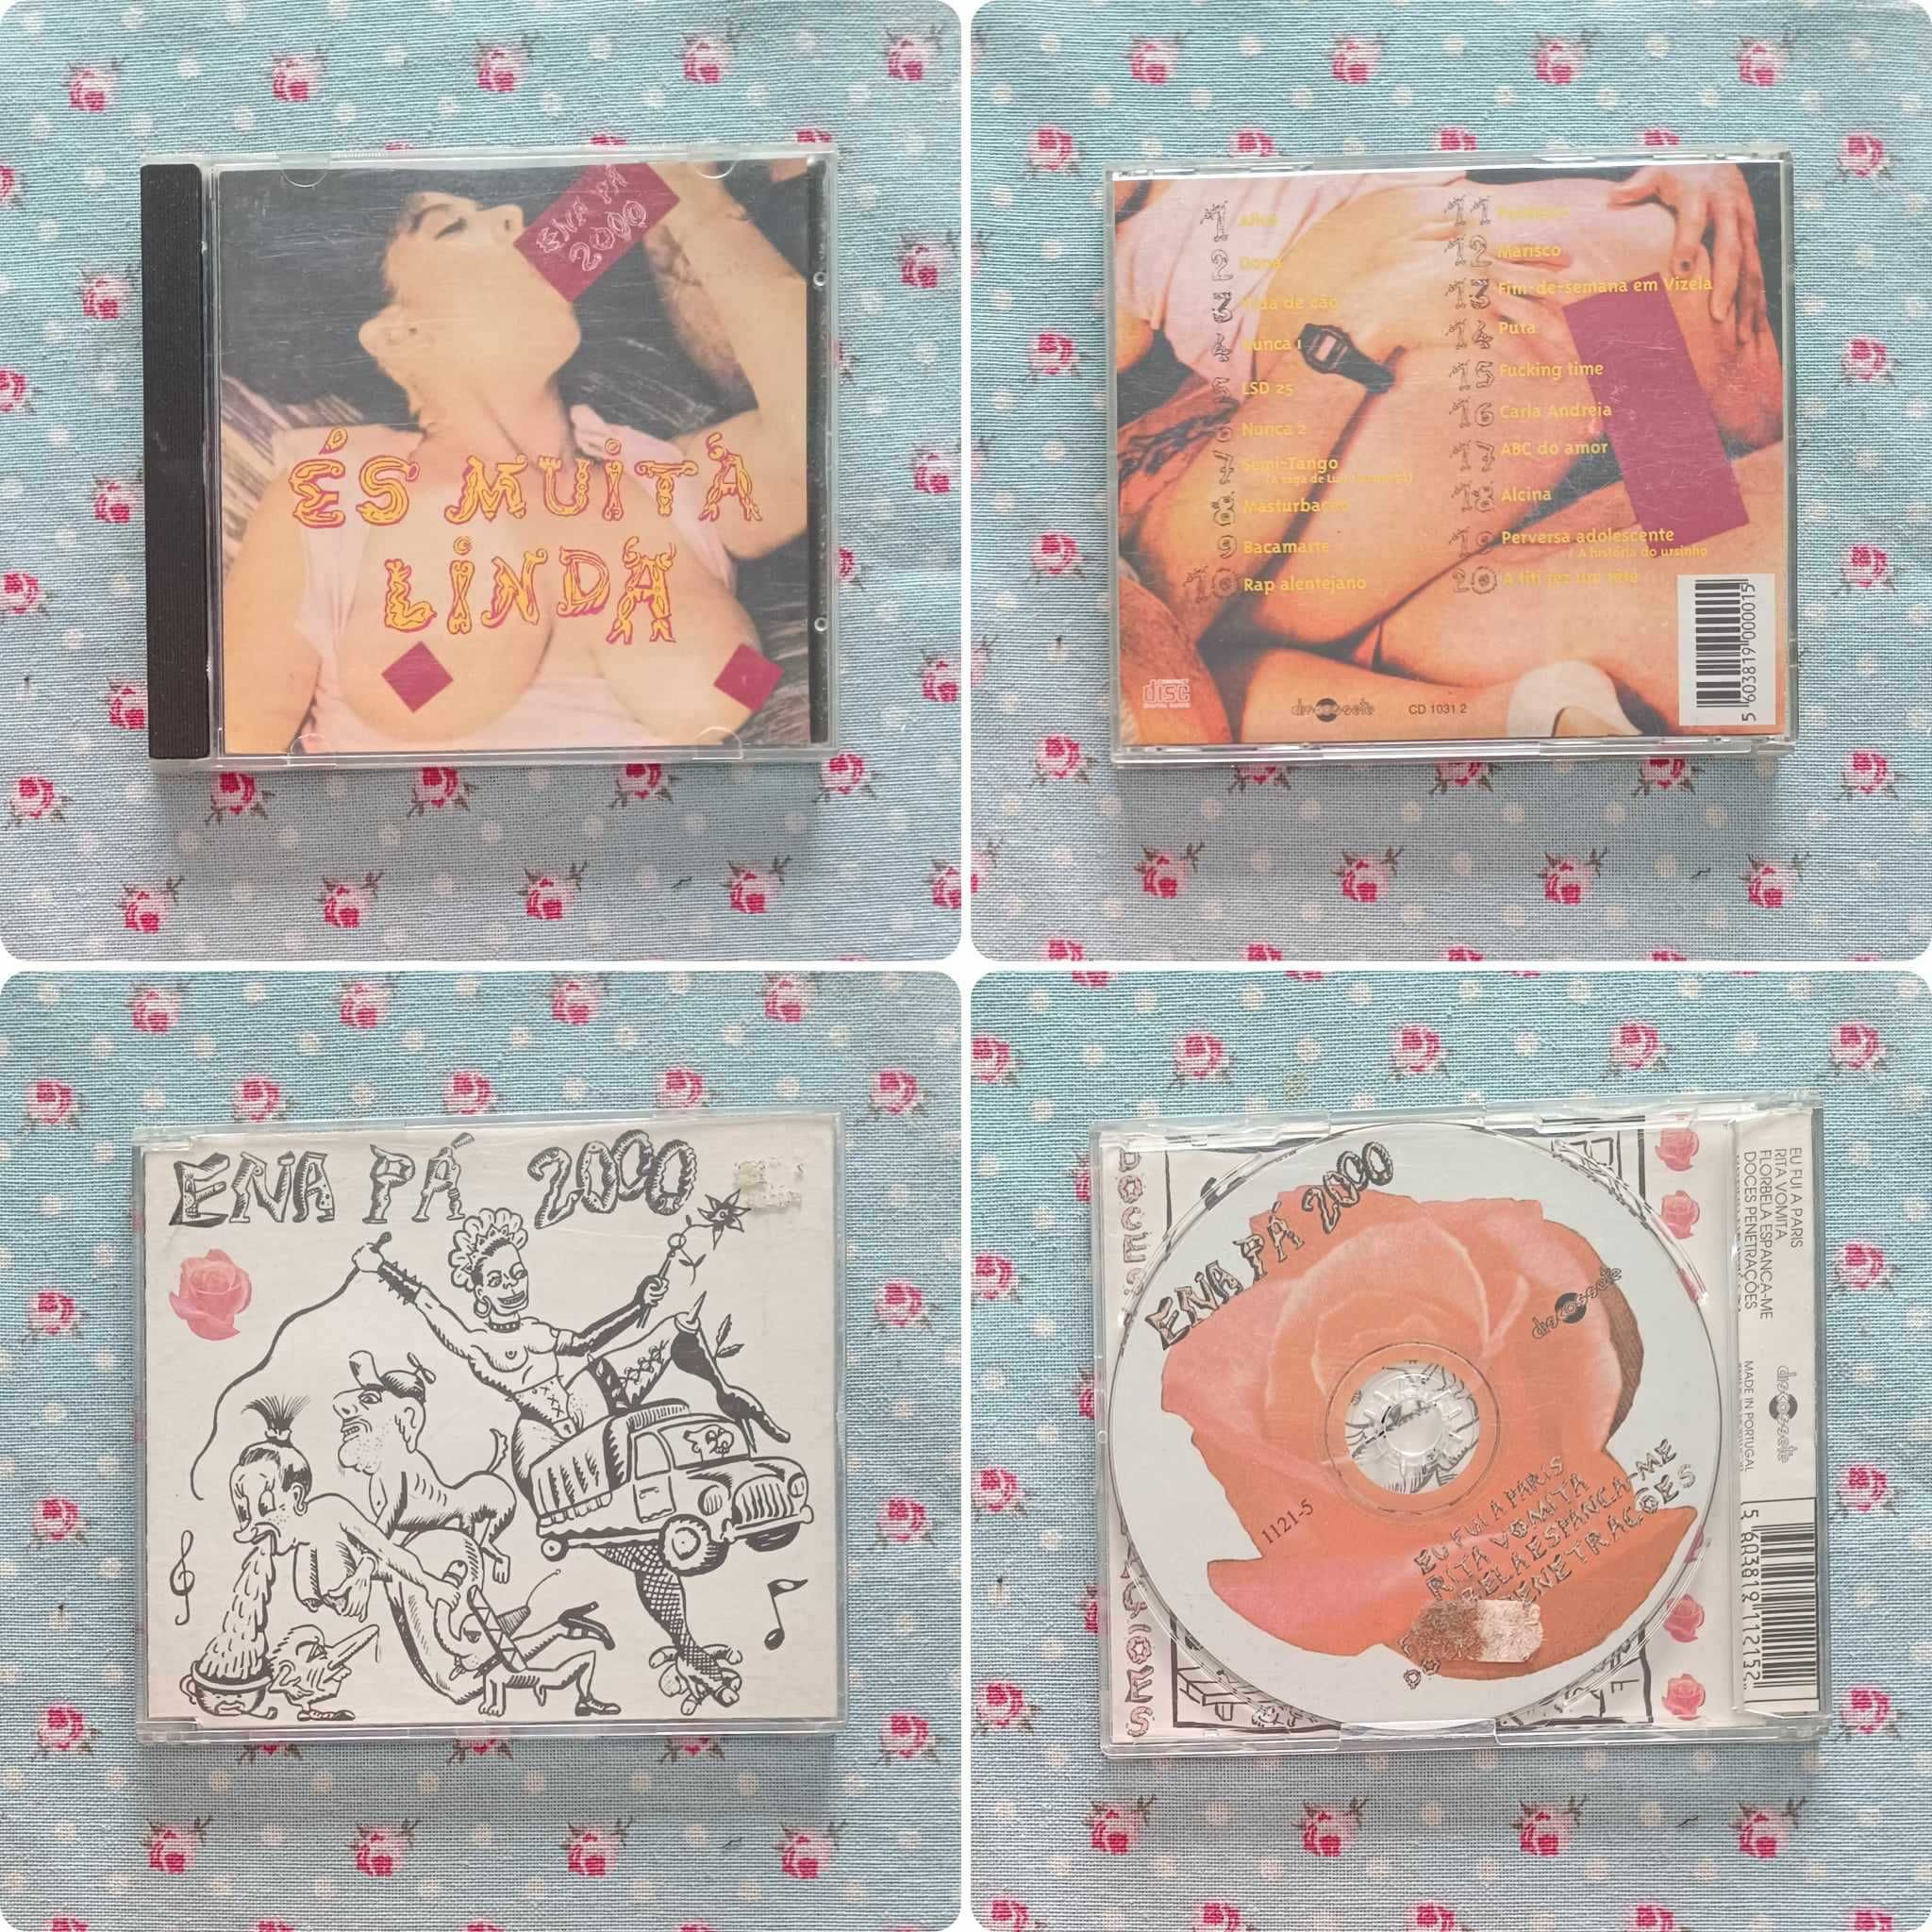 2 CDs dos Ena Pá 2000